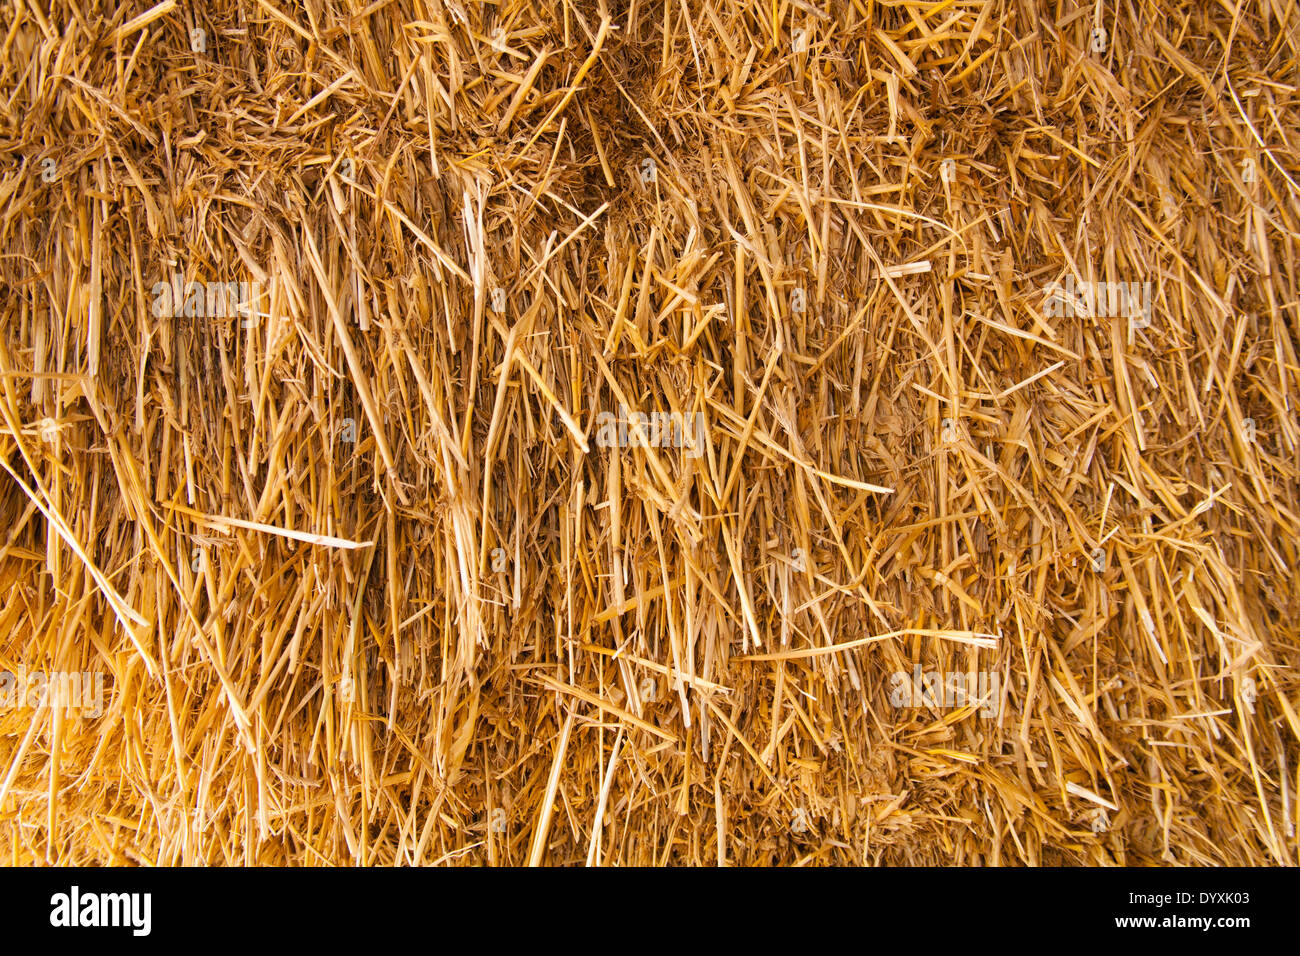 Wheat straw bale Stock Photo